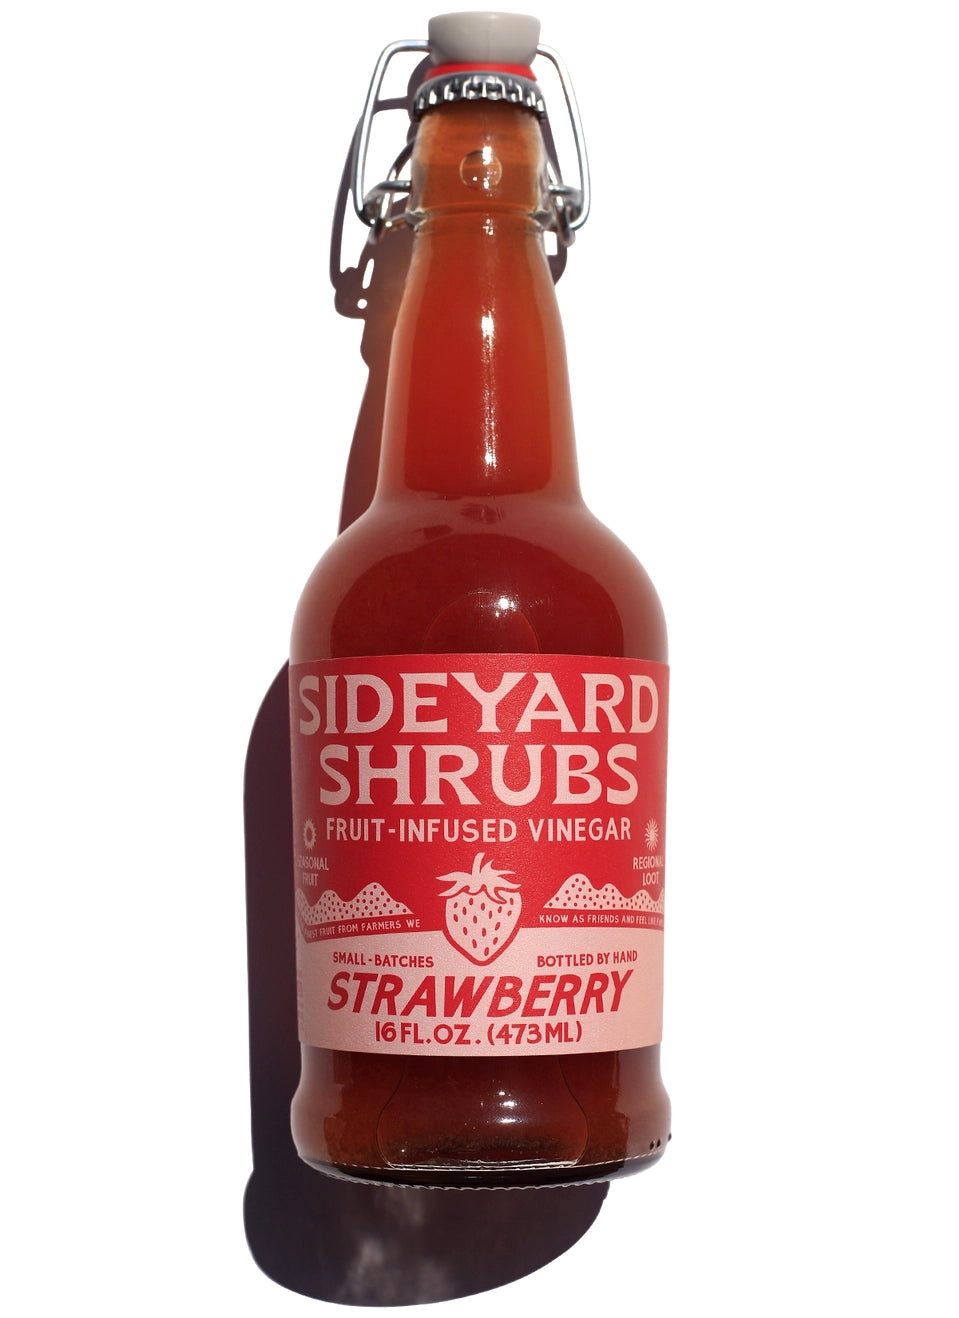 Strawberry Fruit Infused Vinegar by Sideyard Shrubs